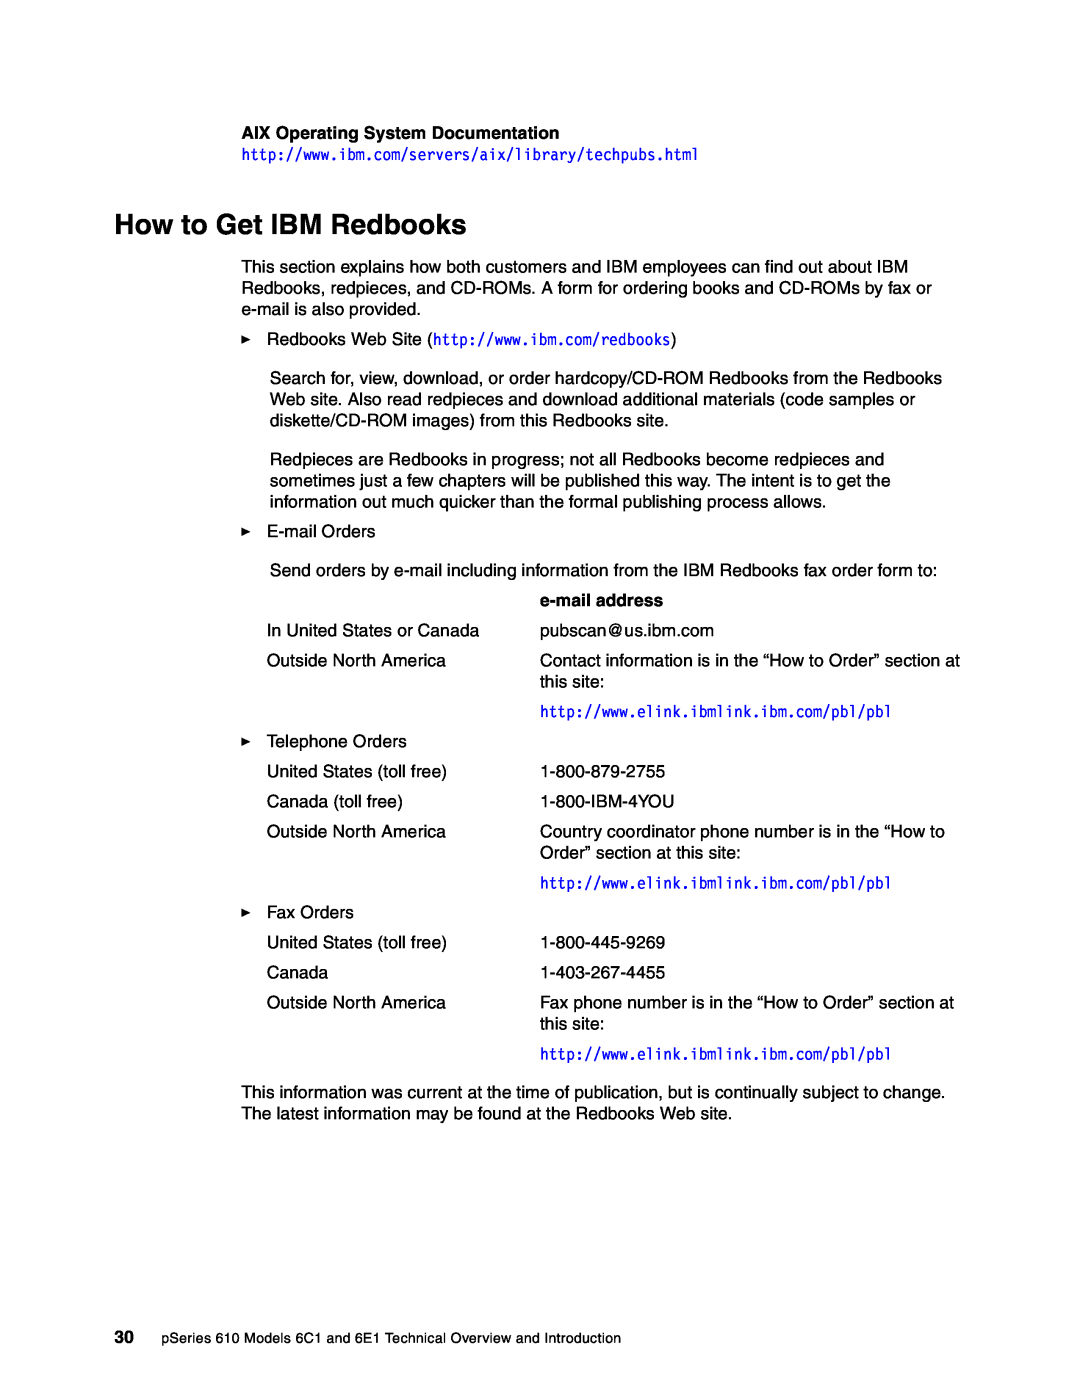 IBM 610, 6E1, 6C1 manual How to Get IBM Redbooks, AIX Operating System Documentation, e-mail address 